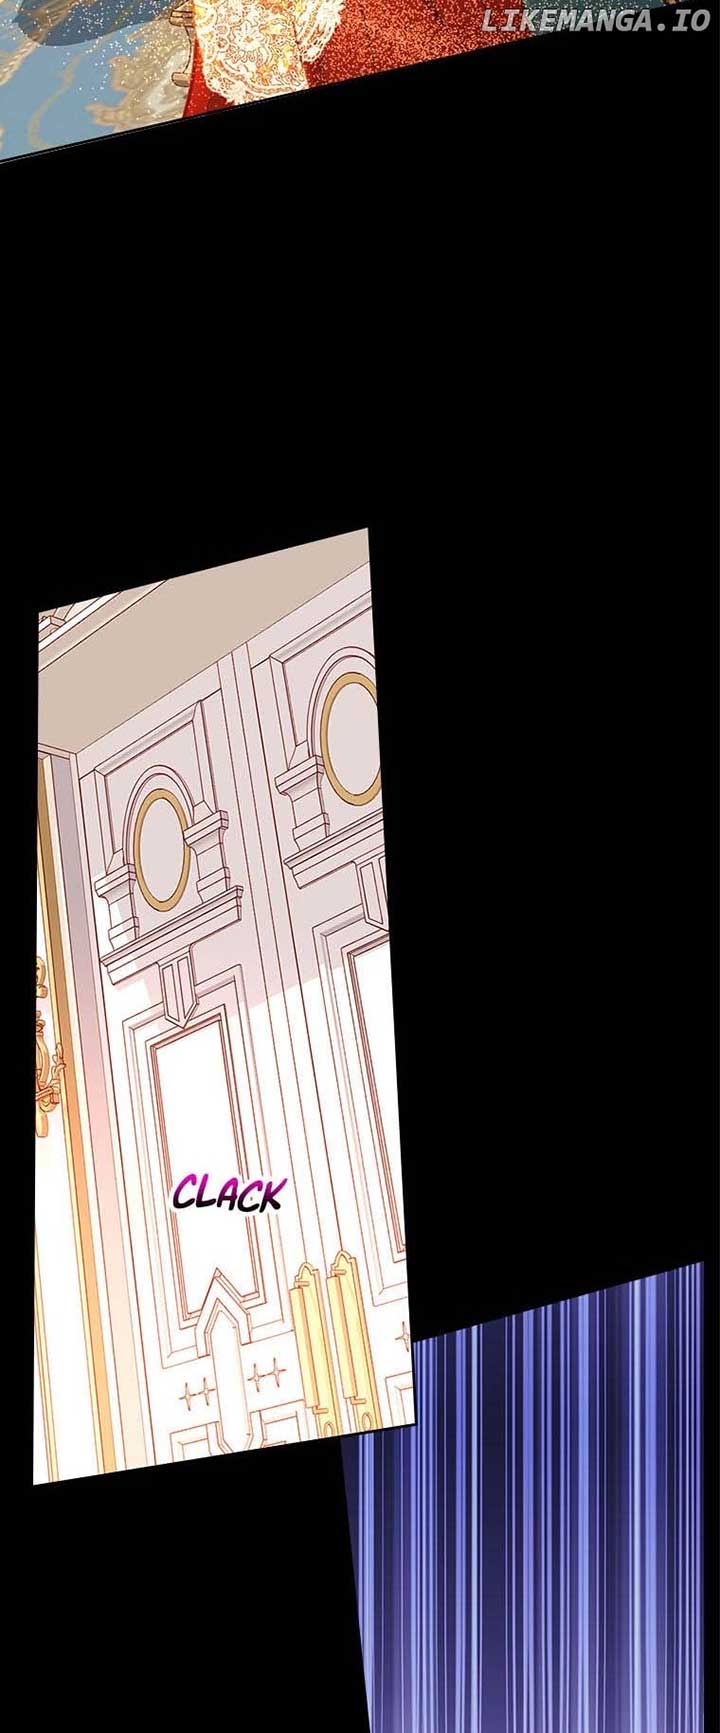 The Duchess’s Secret Dressing Room chapter 78